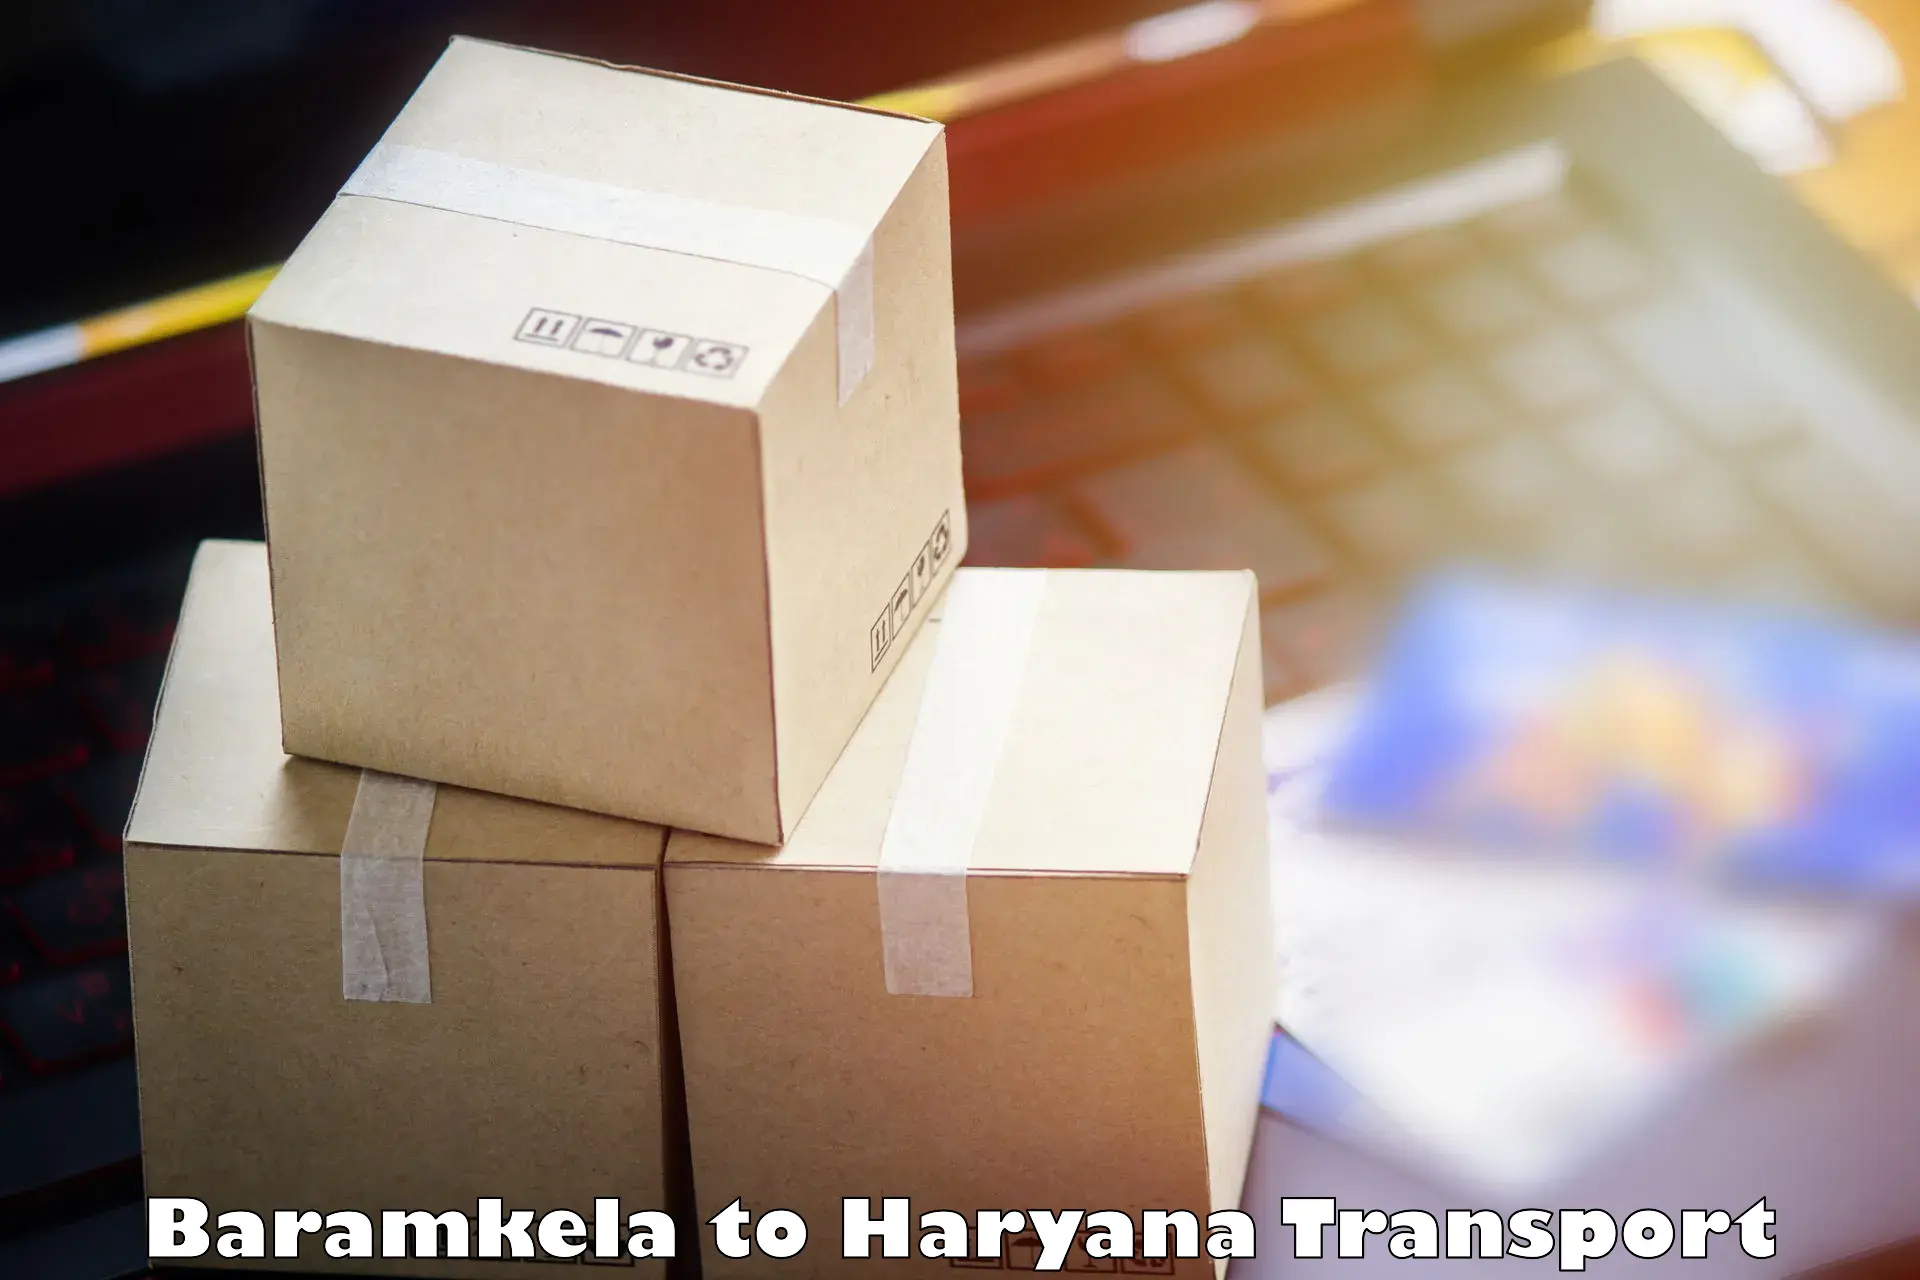 Daily transport service Baramkela to Charkhari